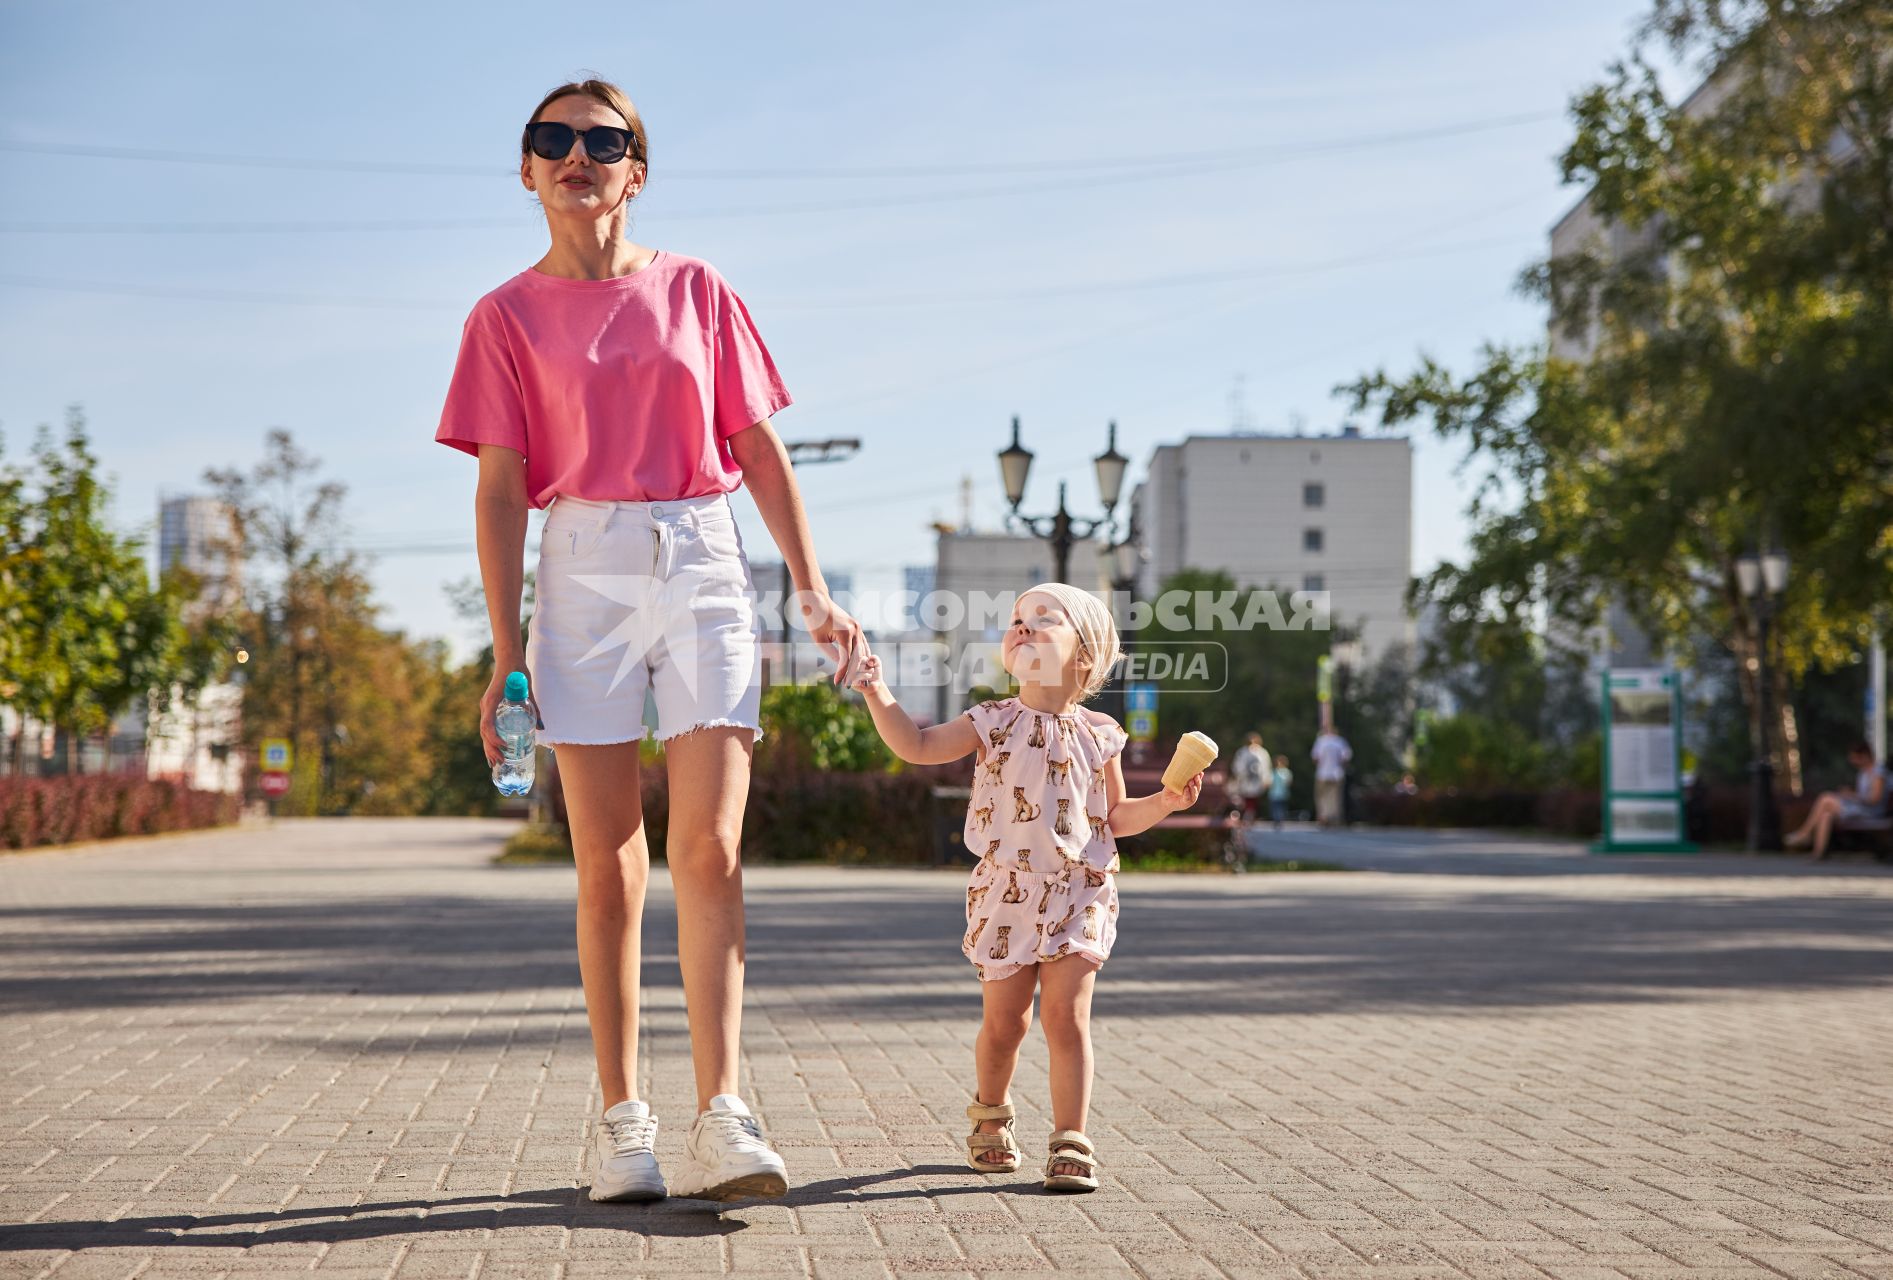 Пермь. Девушка с ребенком гуляют по улице.